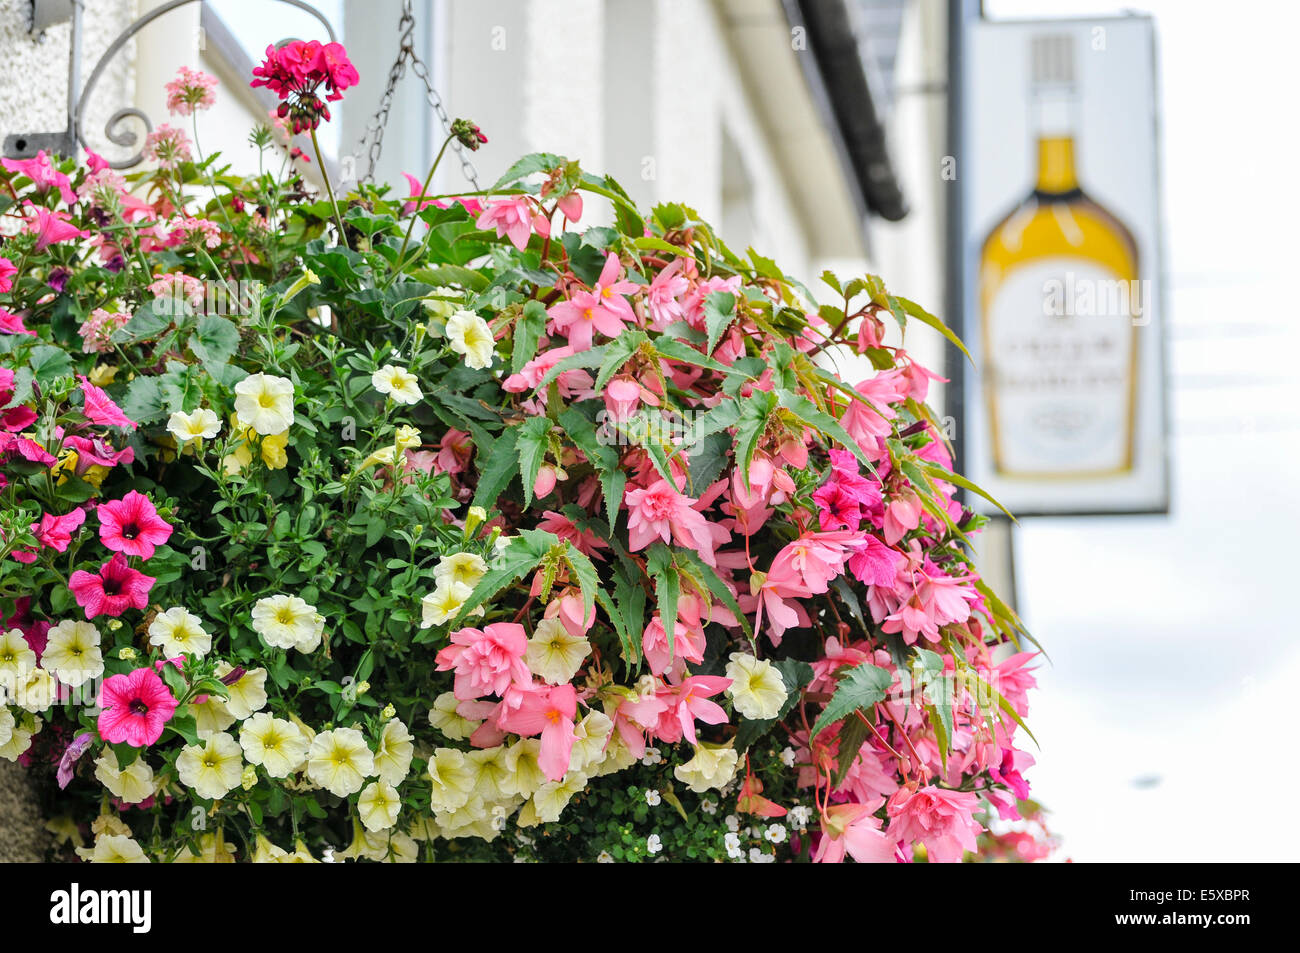 Ballymena, Irlande du Nord. 7 Aug 2014 - affichage Floral en dehors de la pub dans le village d'Ahoghill Crédit : Stephen Barnes/Alamy Live News Banque D'Images